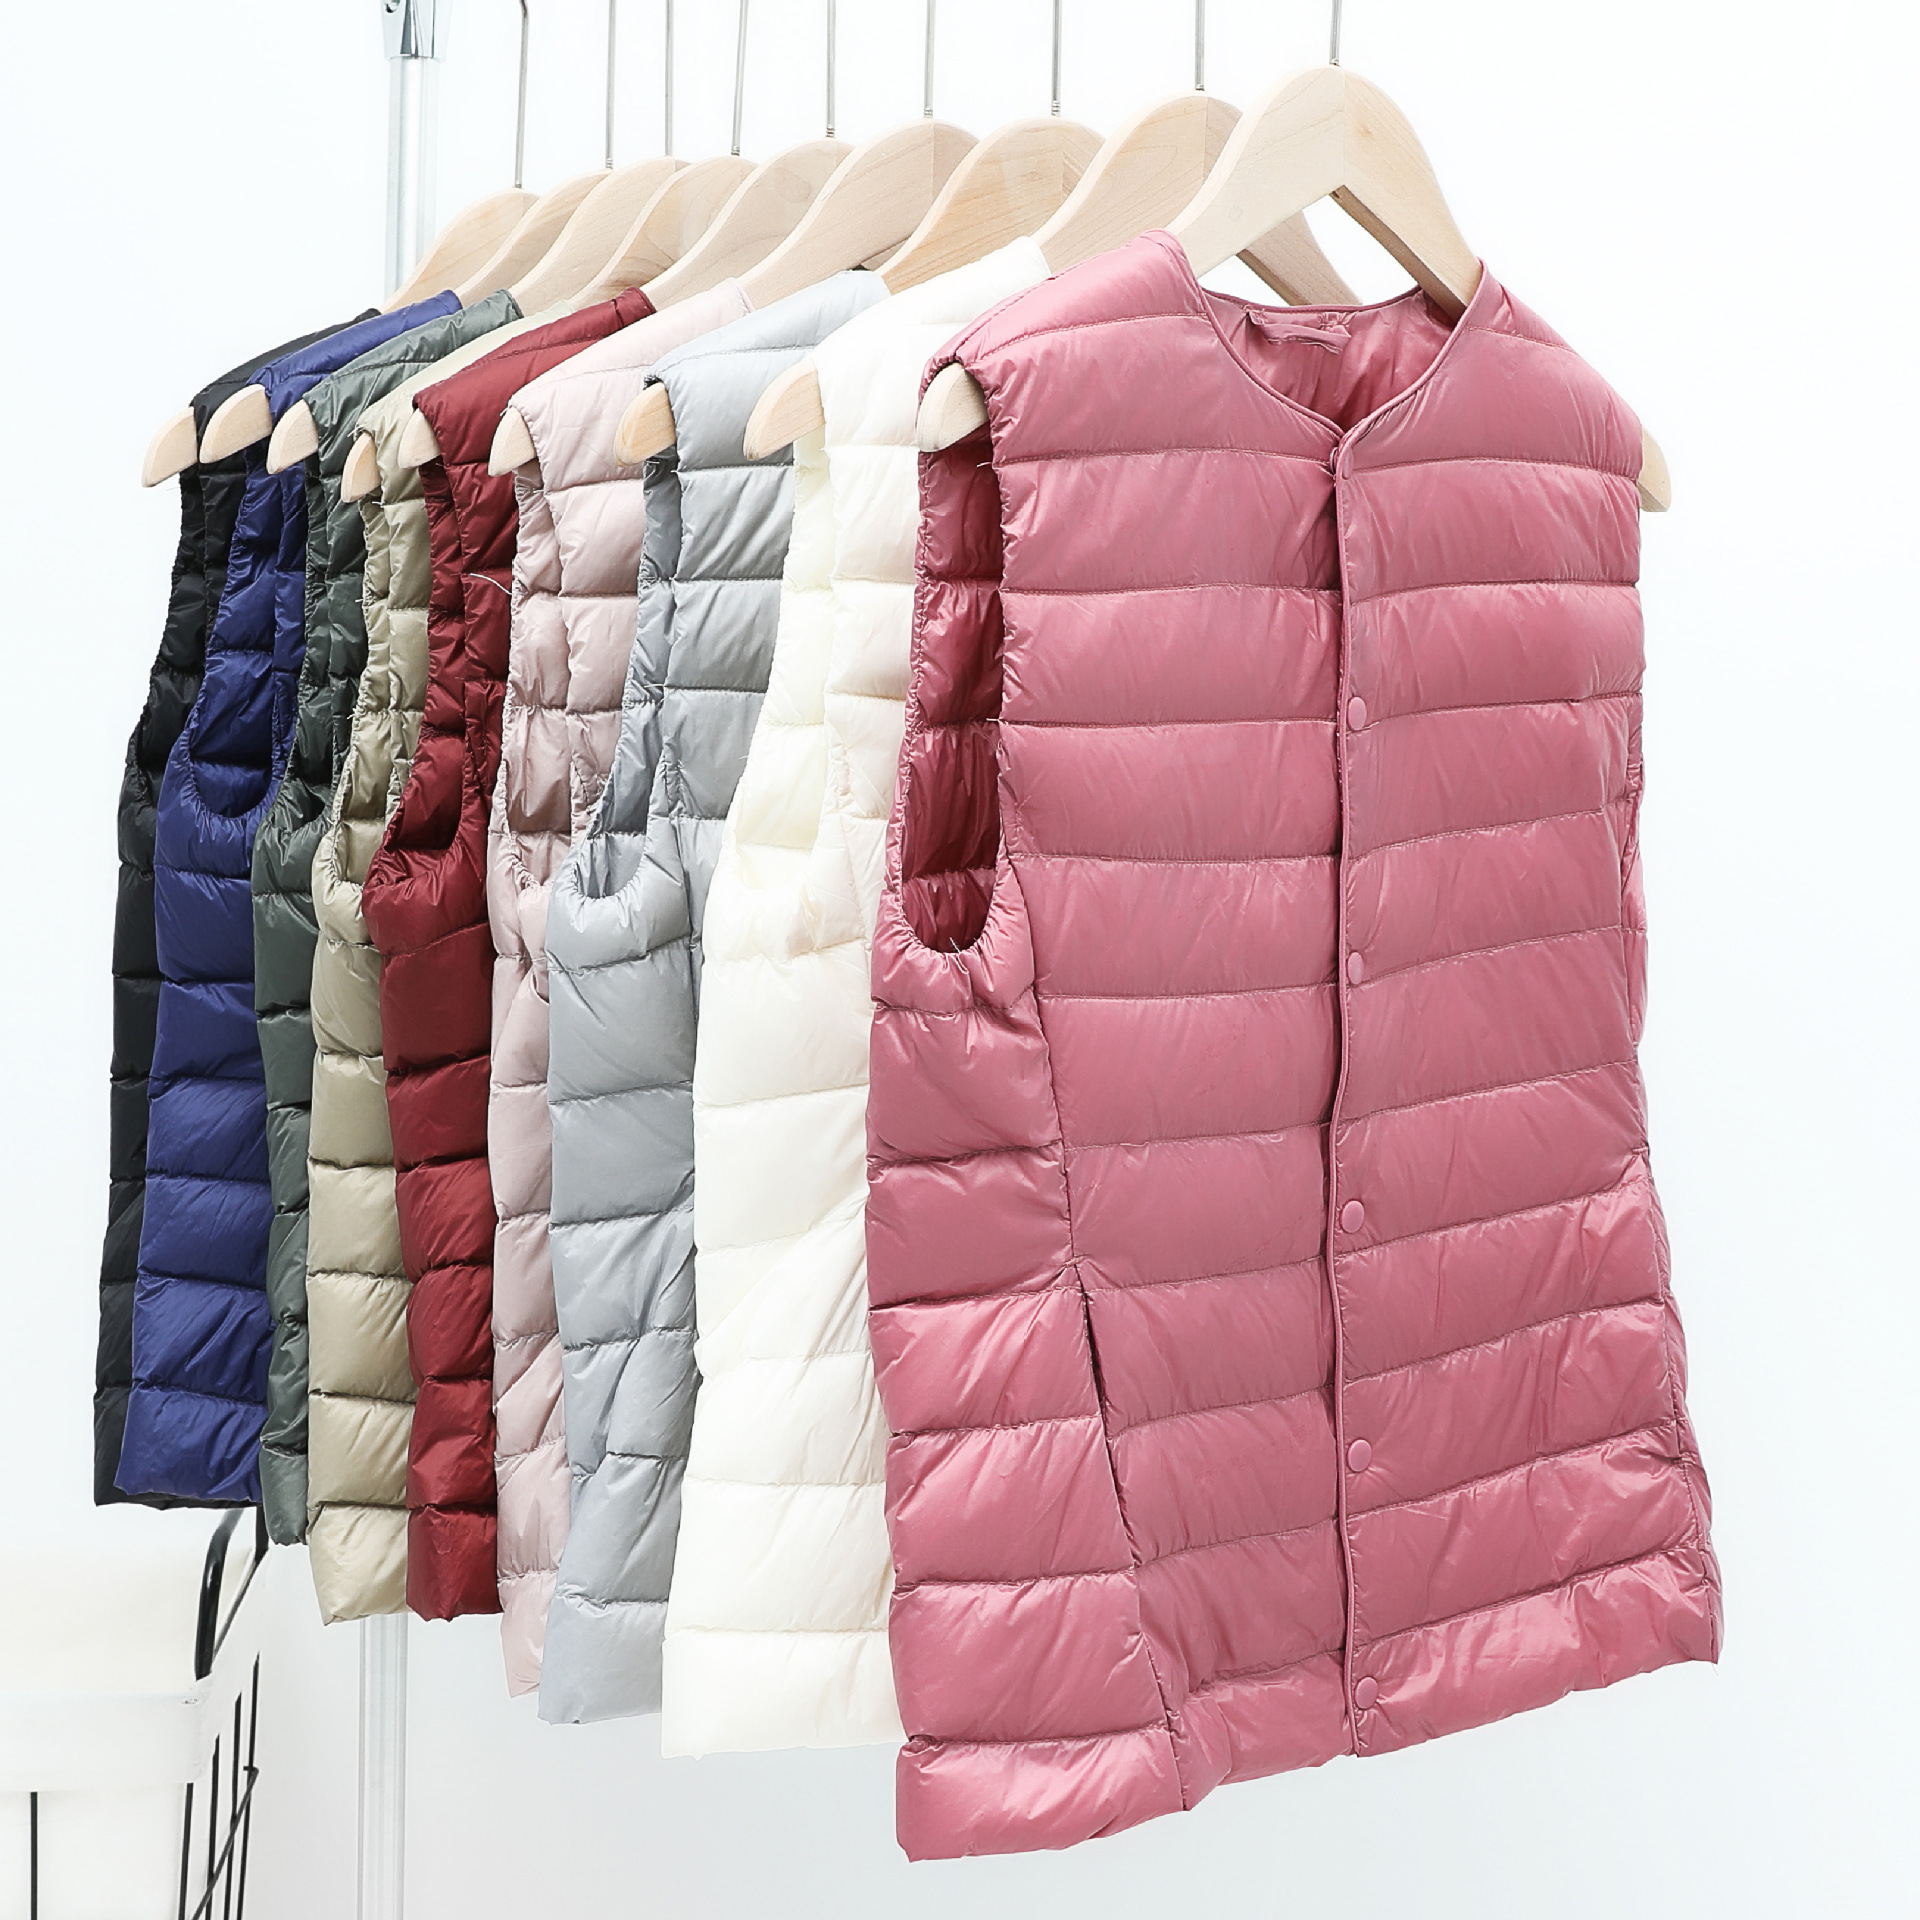 NewBang Women's Warm Vests Ultra Light Down Vest Women Matt Fabric Waistcoat Portable Warm Sleeveless Winter Liner